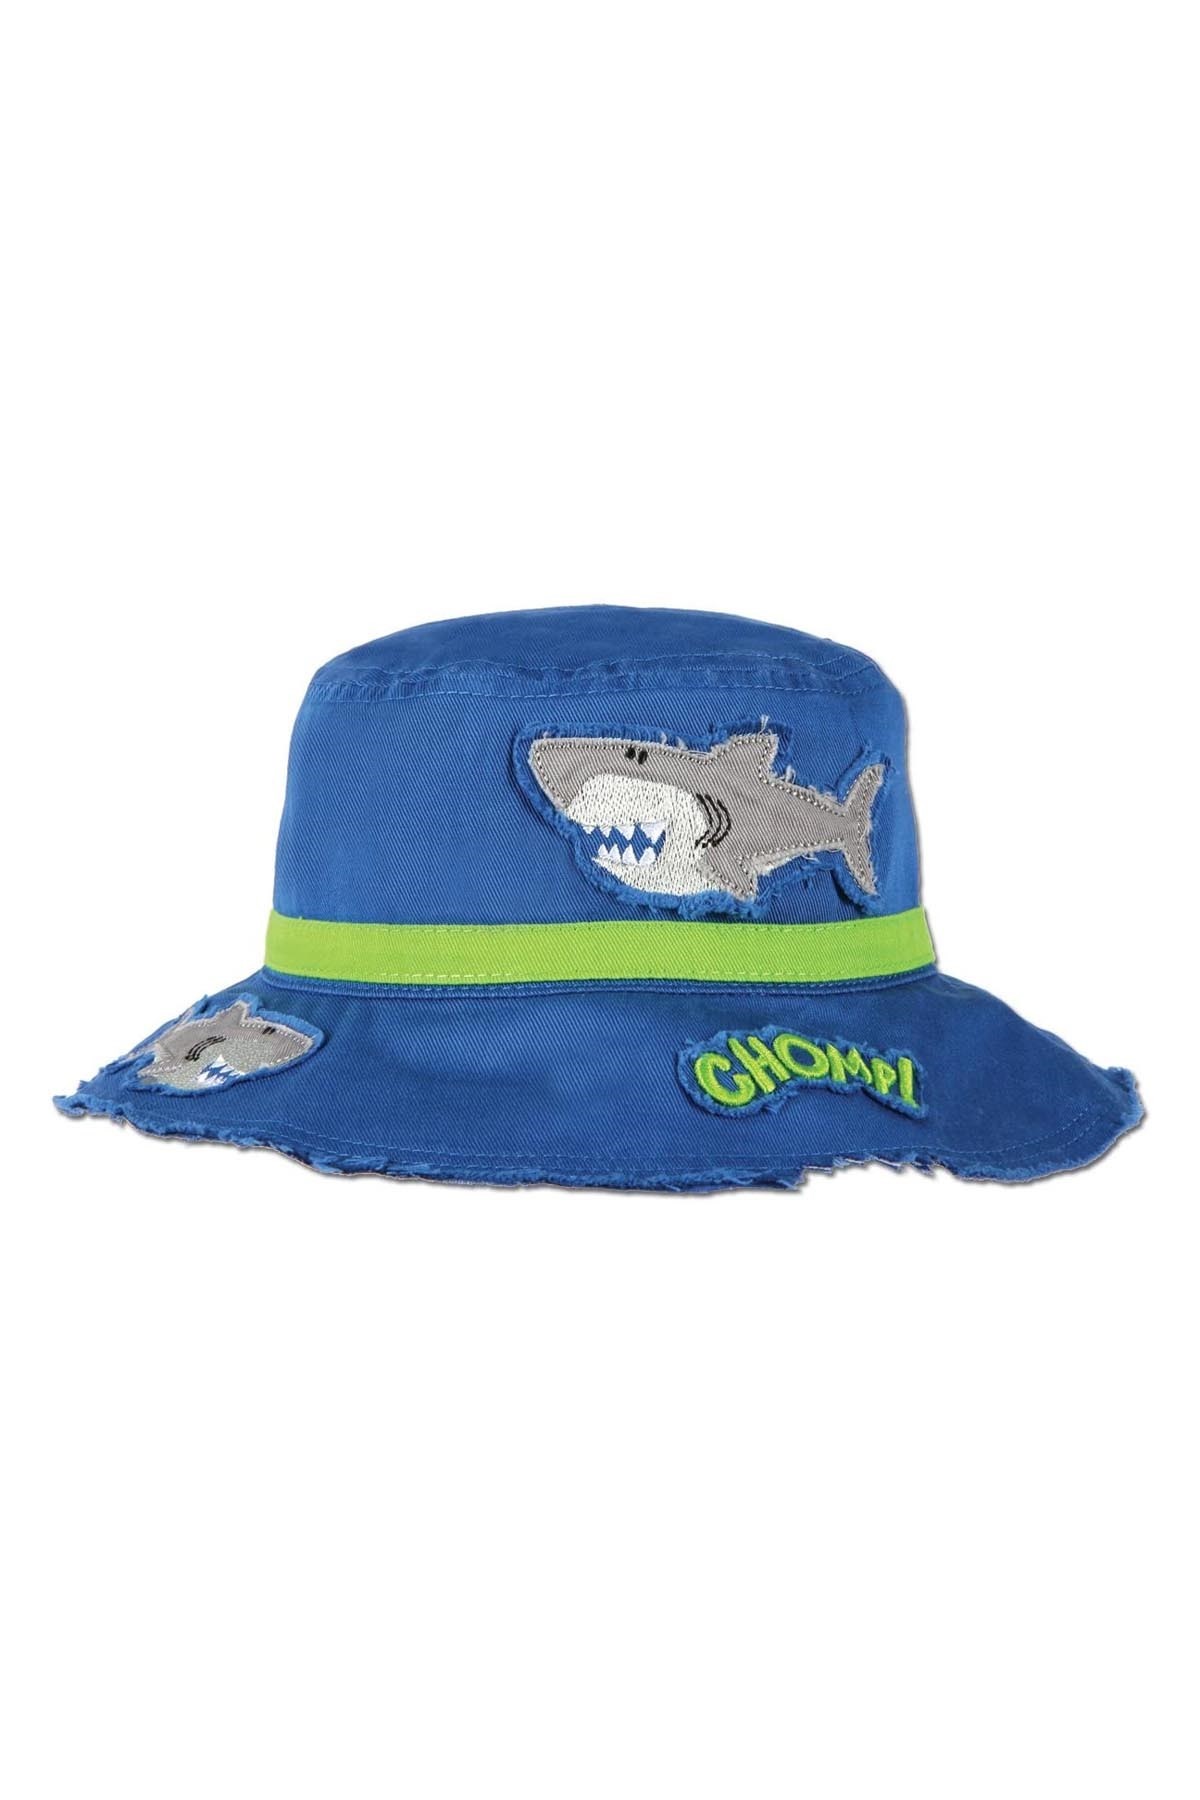 Stephen Joseph Şapka Mavi Köpek Balığı